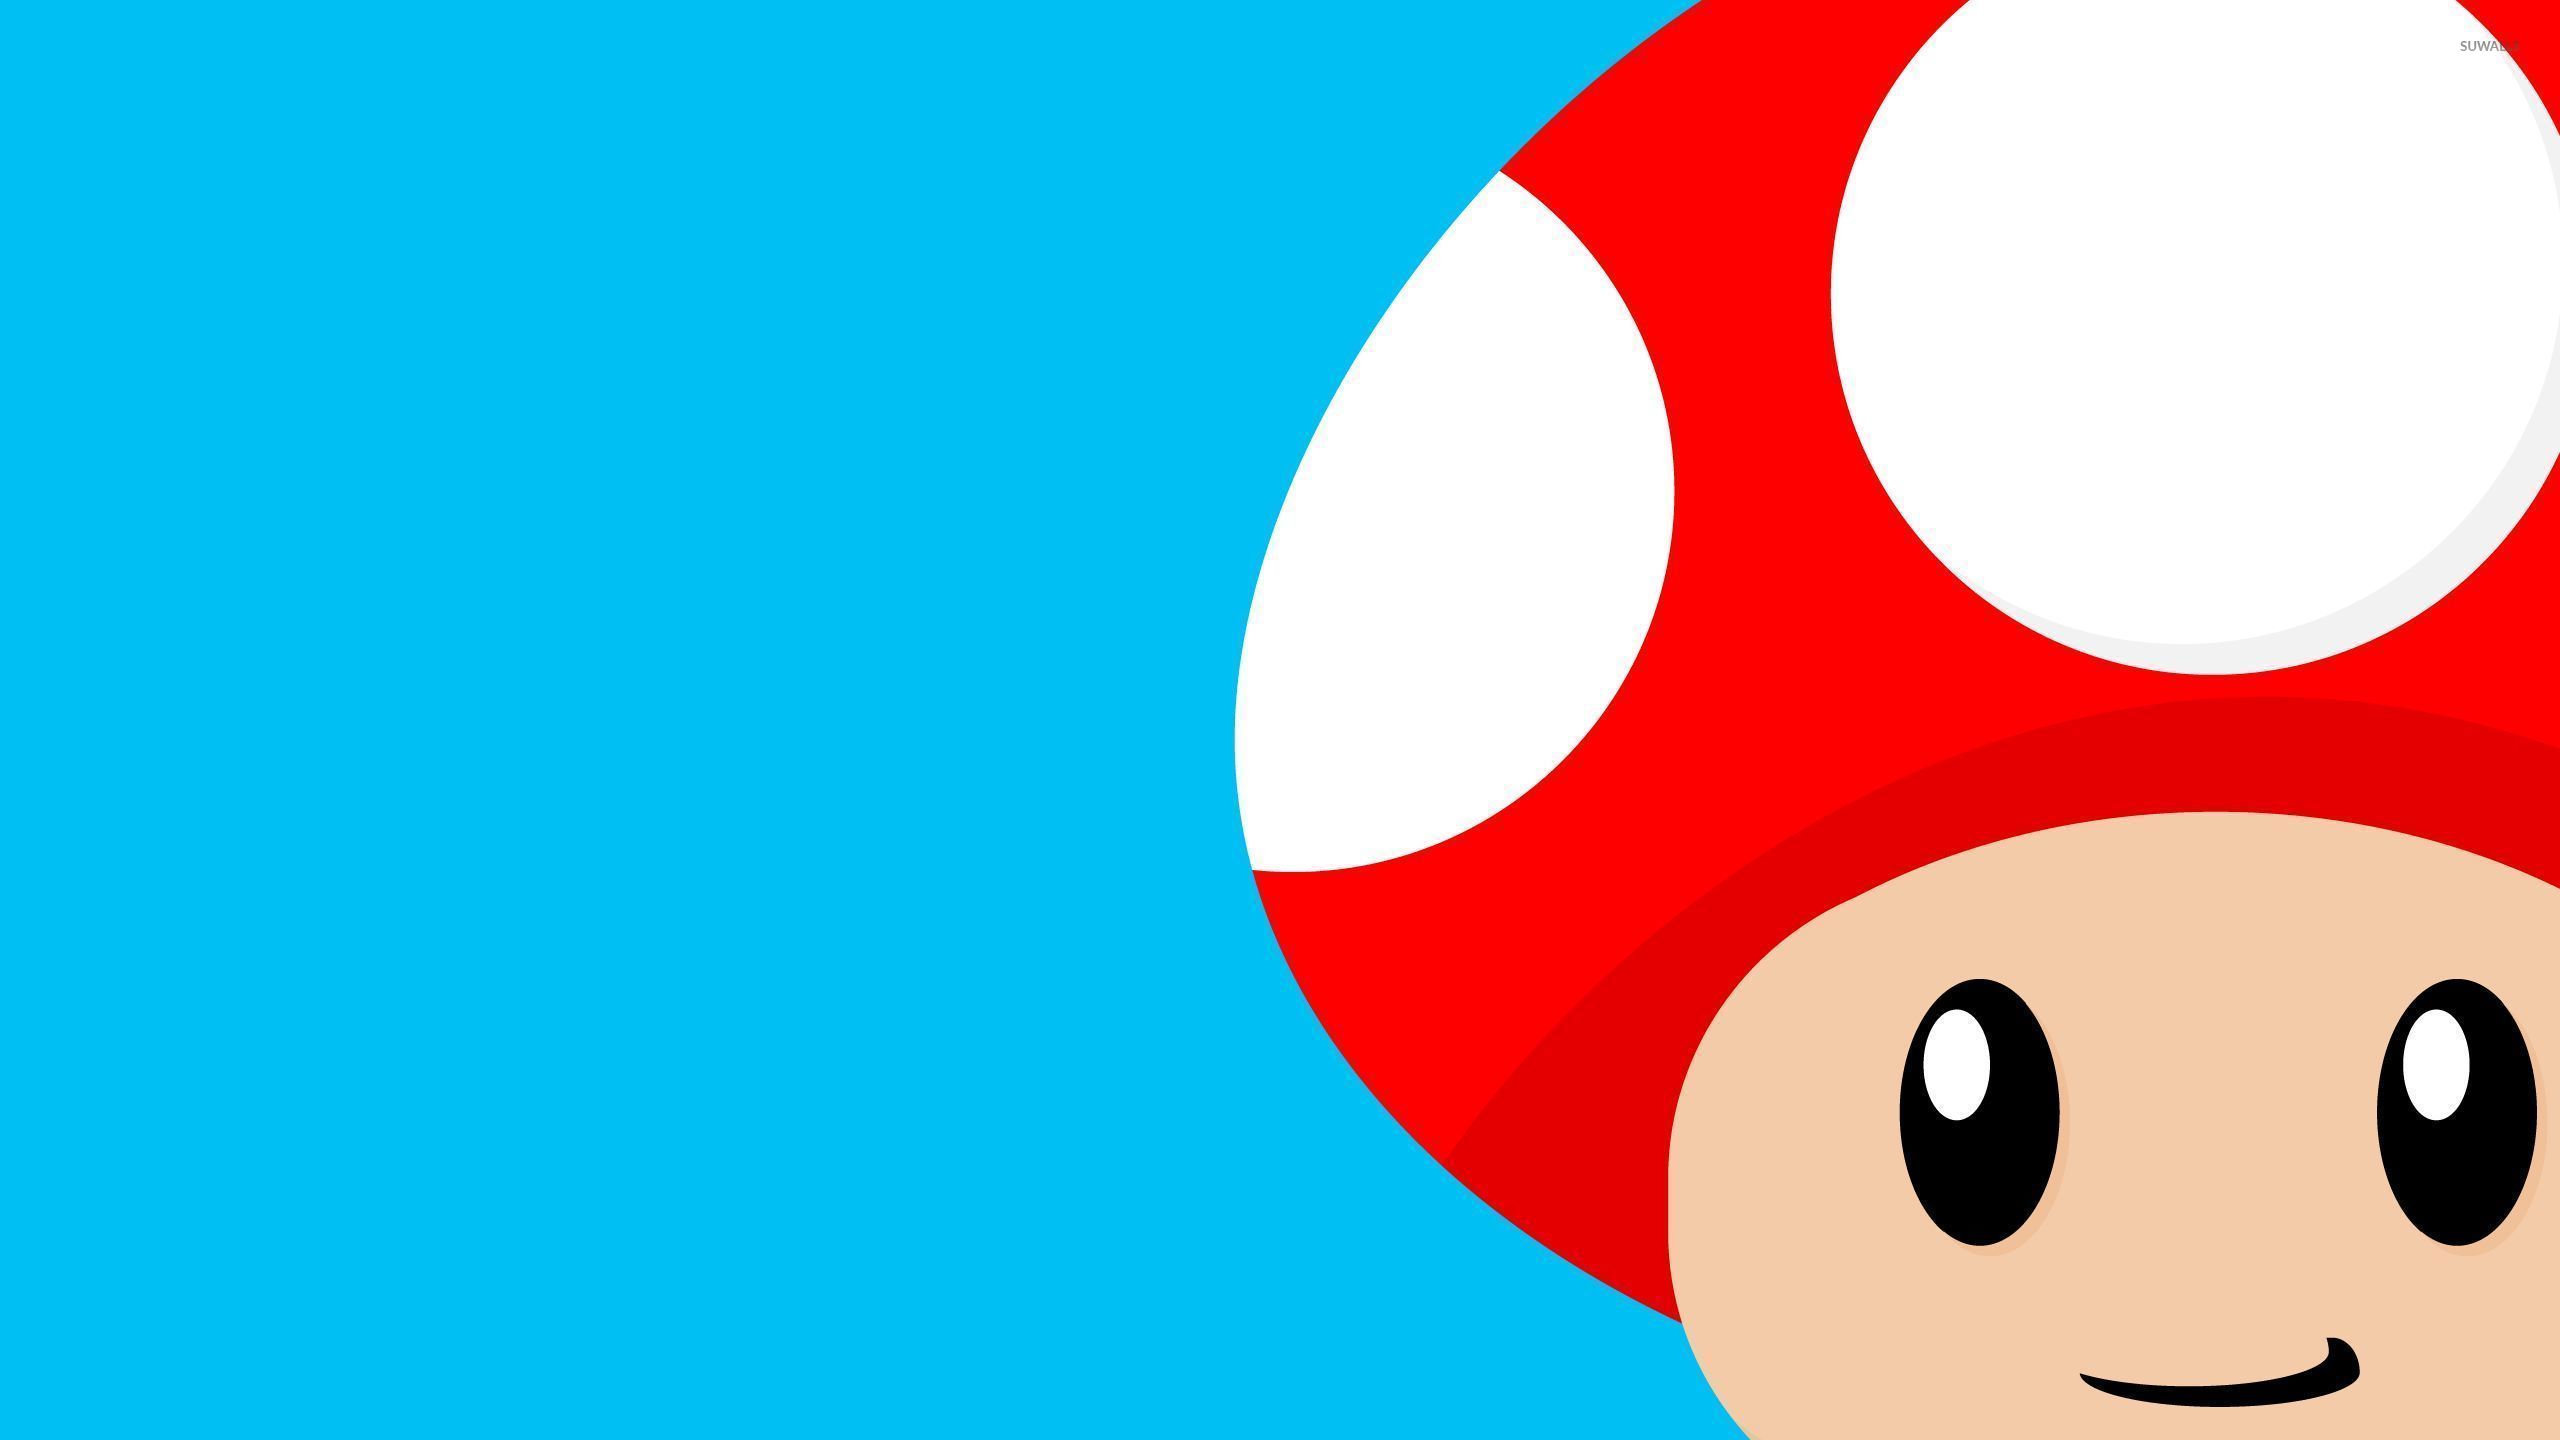 Mario mushroom [2] wallpaper   Vector wallpapers   26595